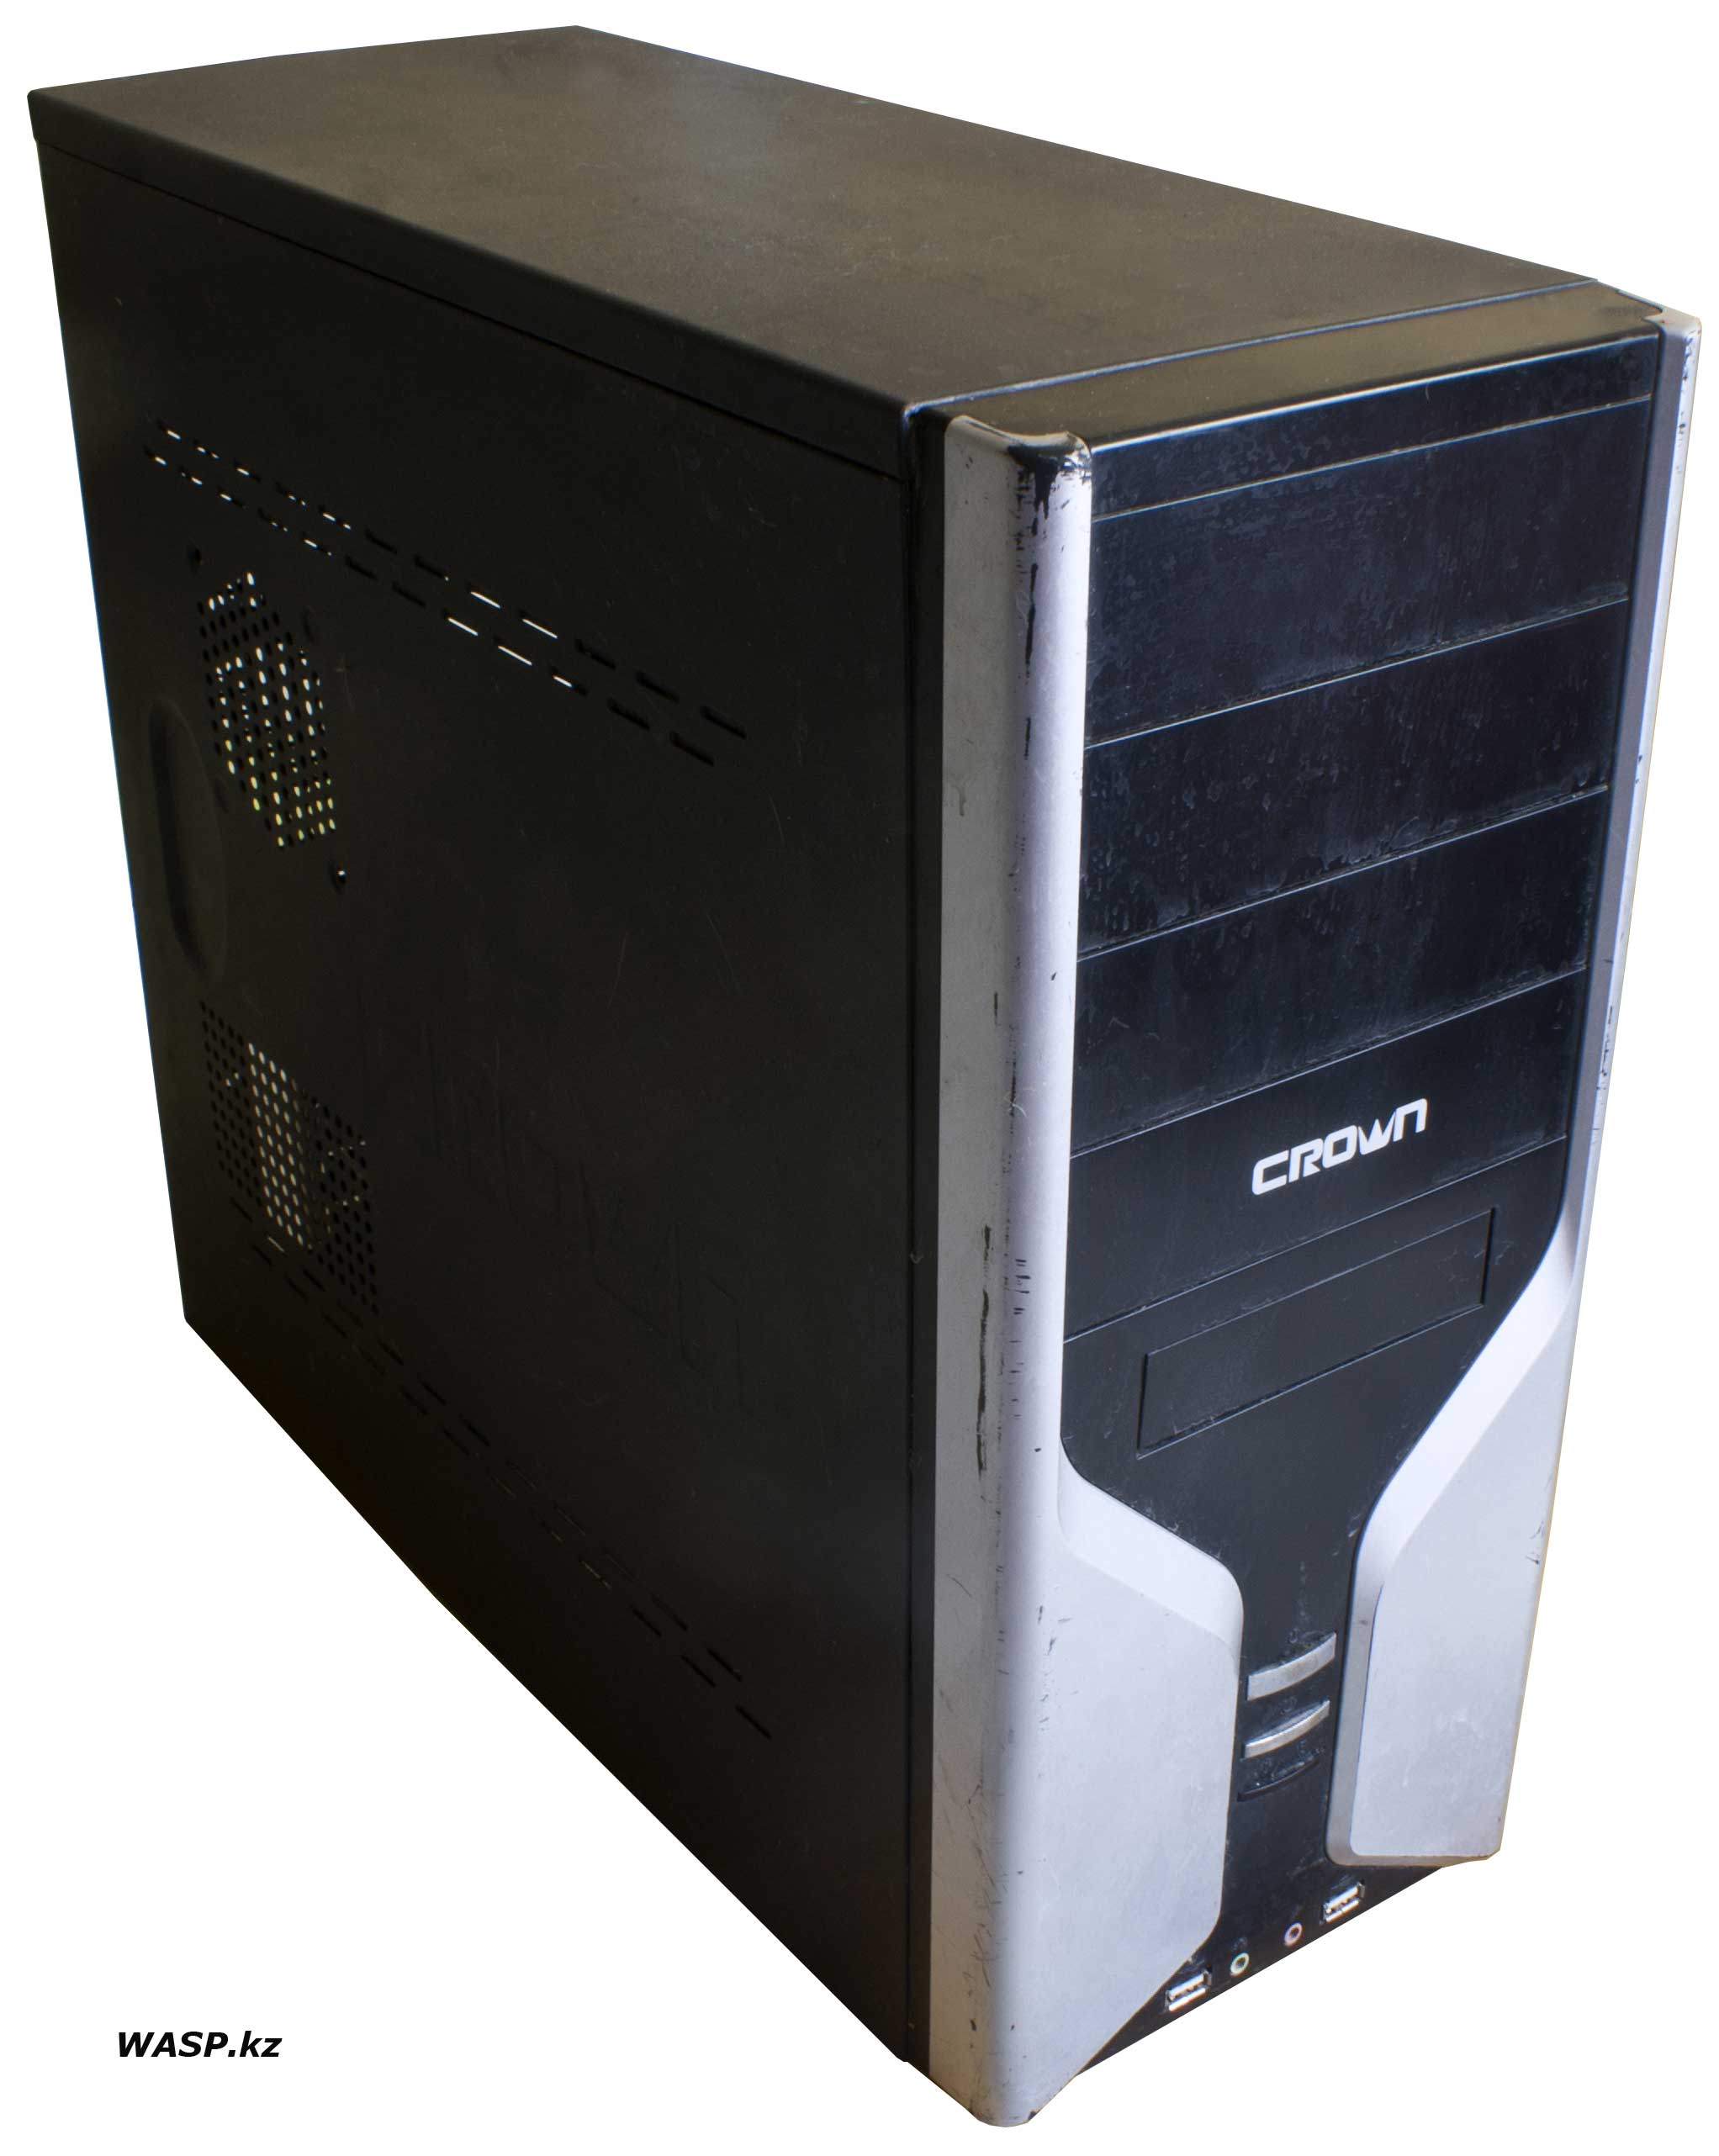 Обзор компьютерного корпуса Crown серия 600 или 608 2010 год